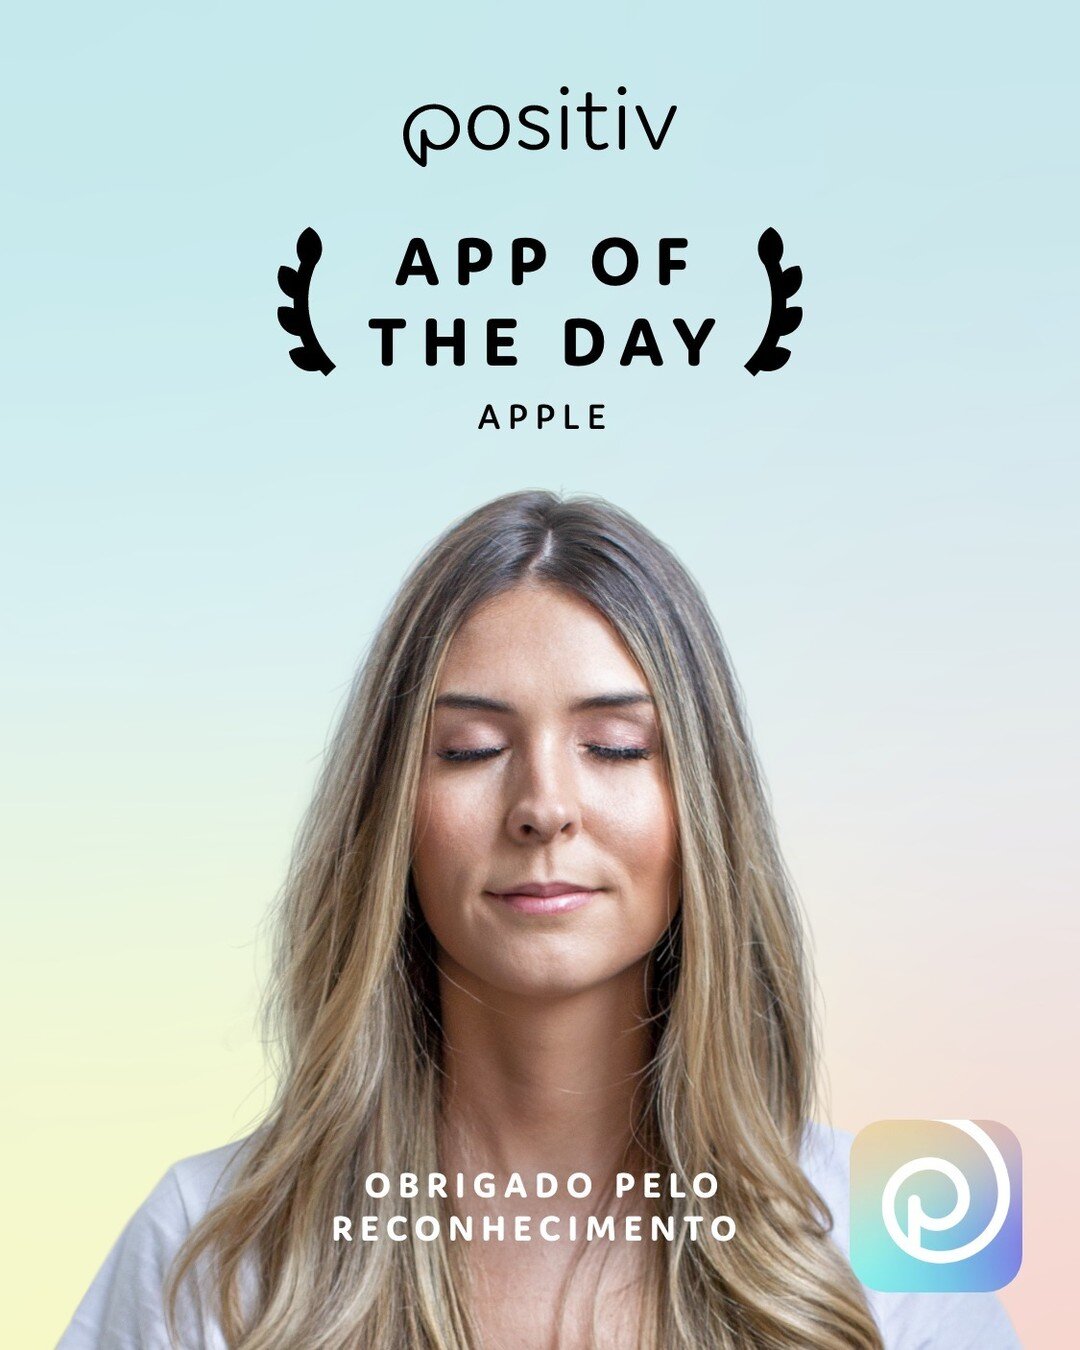 Hoje, fomos escolhidos pela @apple para ser o destaque como App of the Day na AppStore! Estamos muito felizes pelo reconhecimento!

Valorizamos muito a jornada que fizemos at&eacute; aqui, principalmente porque ela foi compartilhada com todos voc&eci